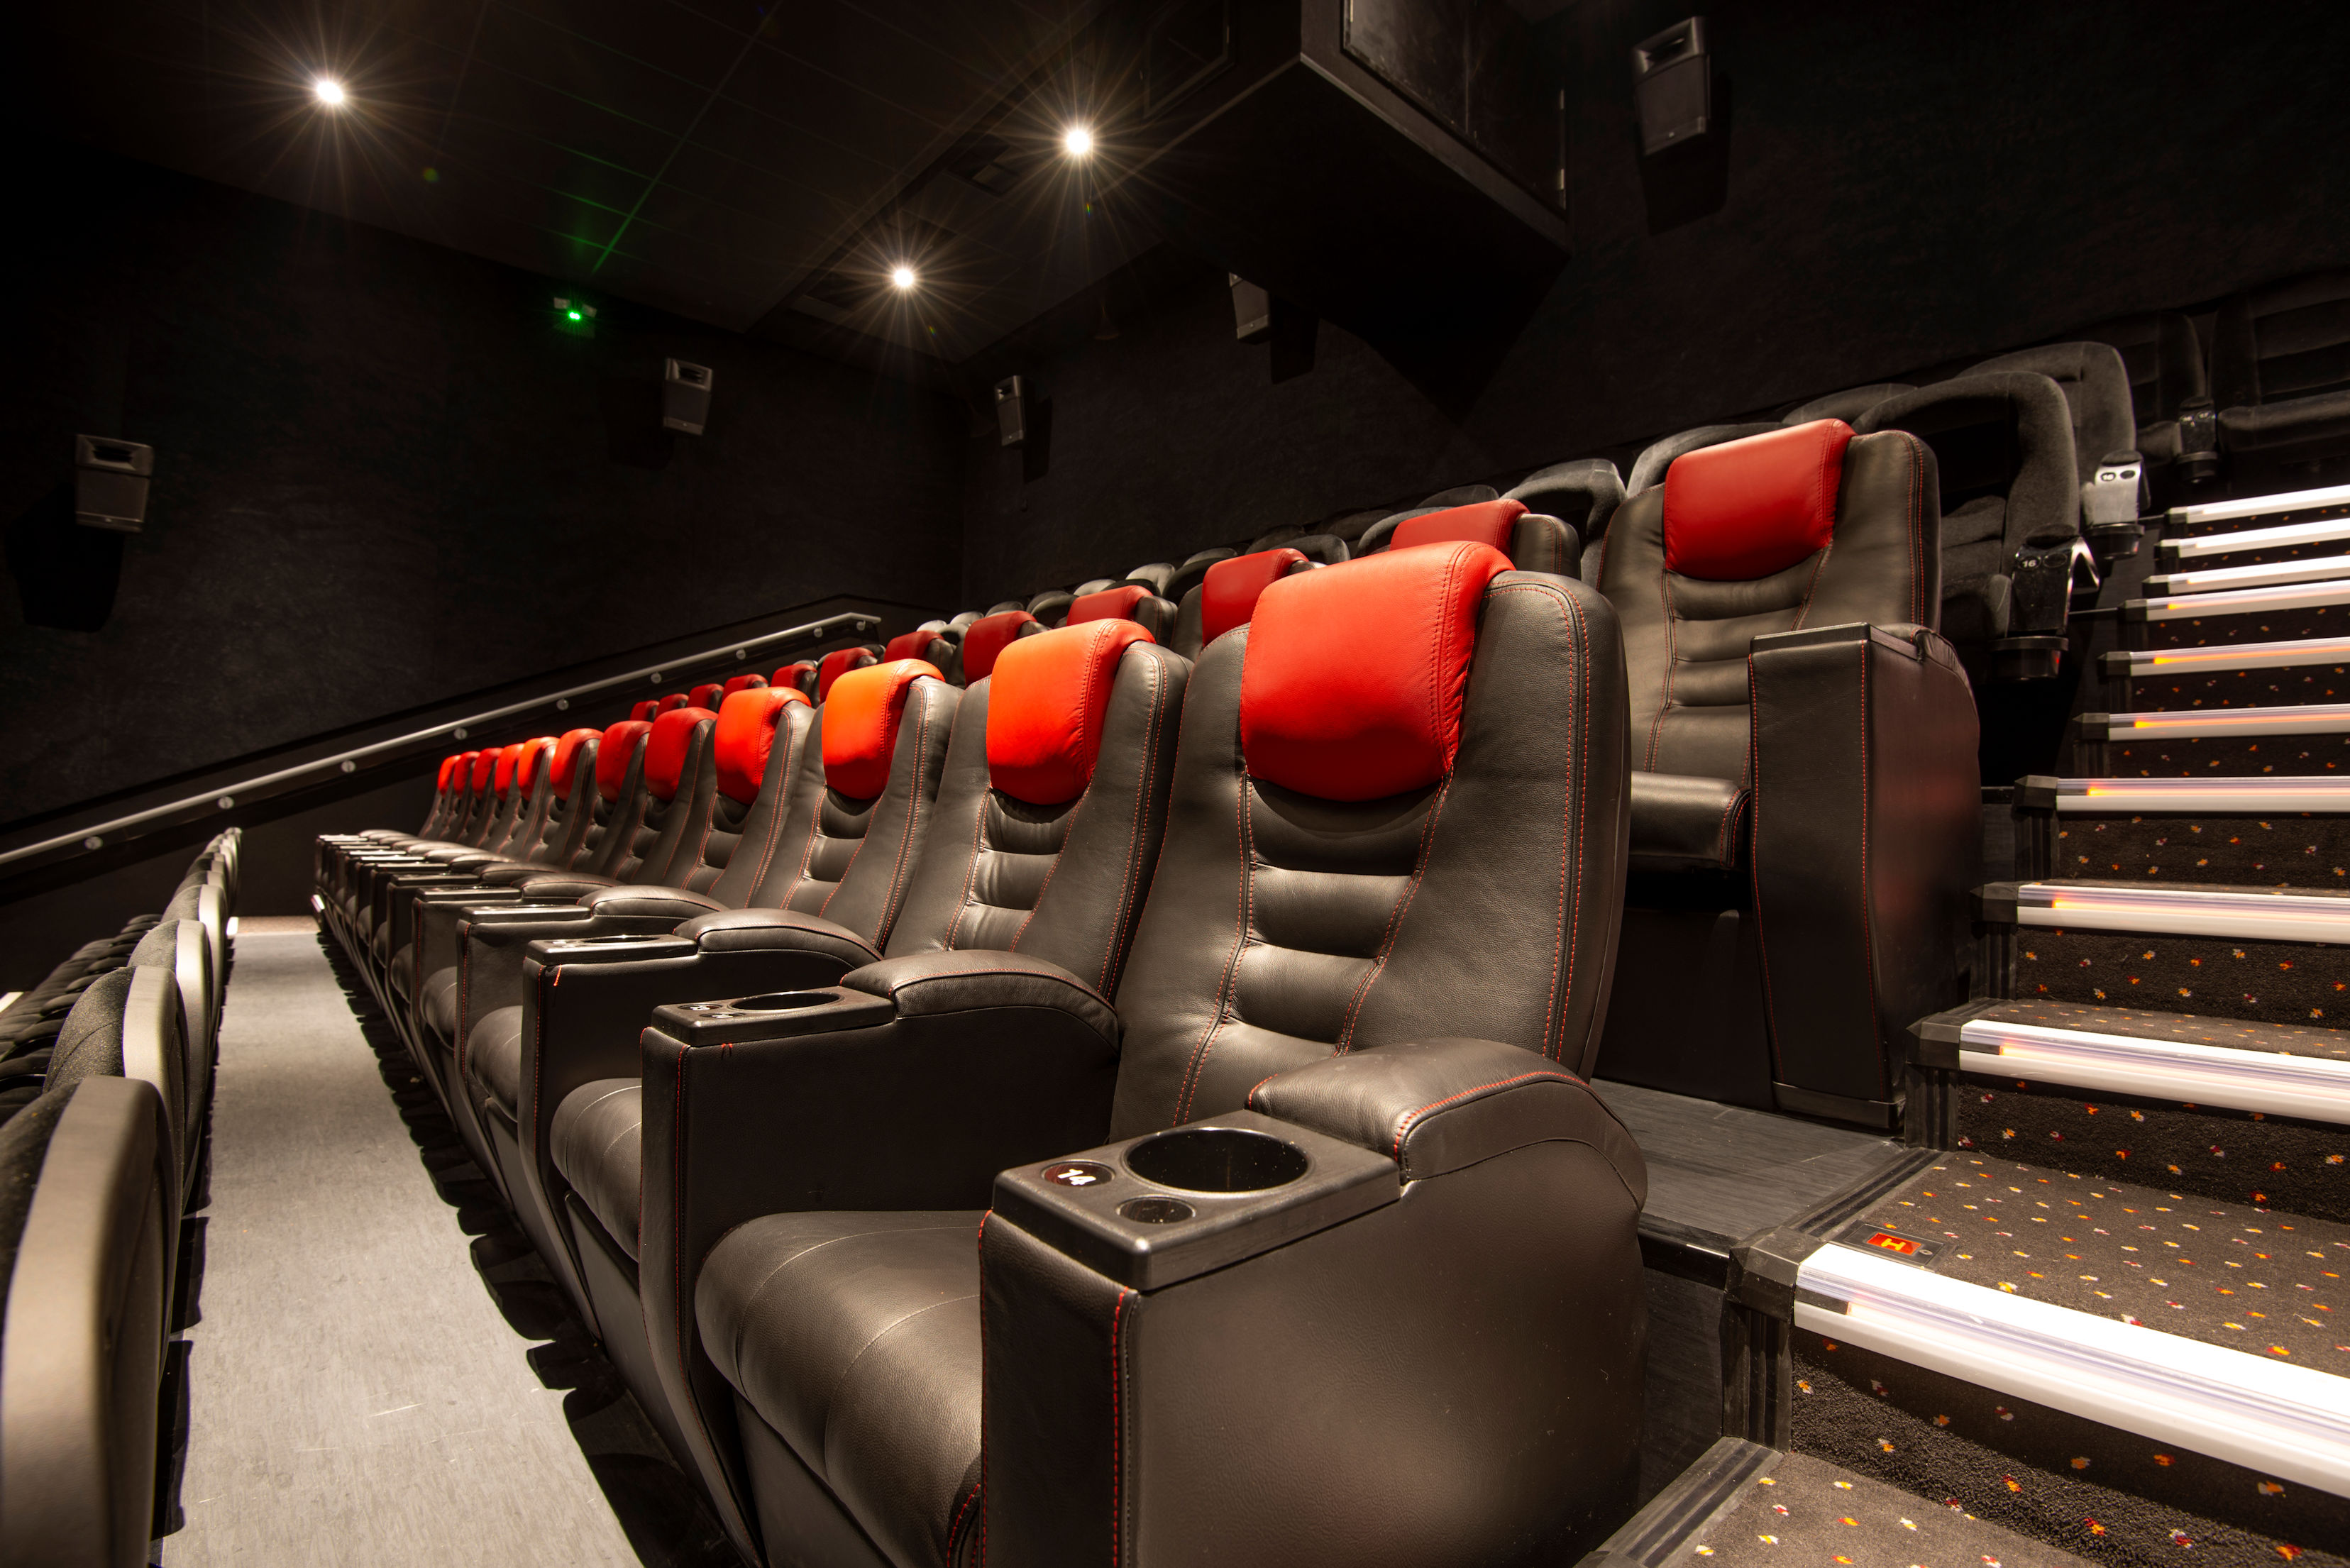 Eltham cinema seats mid.jpg